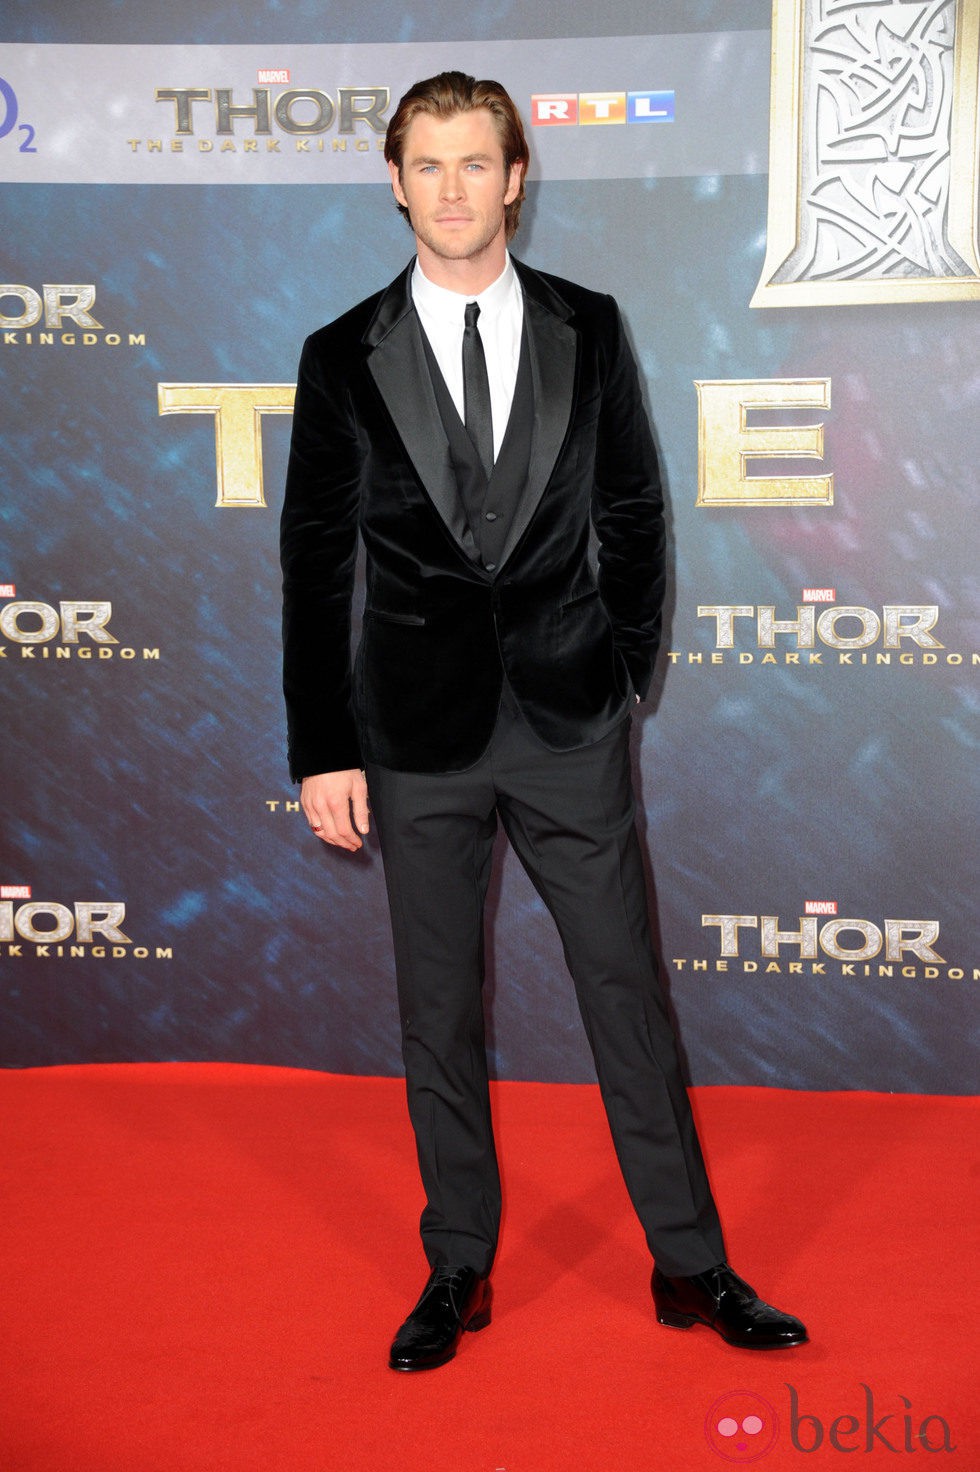 Chris Hemsworth en la premiere de 'Thor: El mundo oscuro' en Berlín